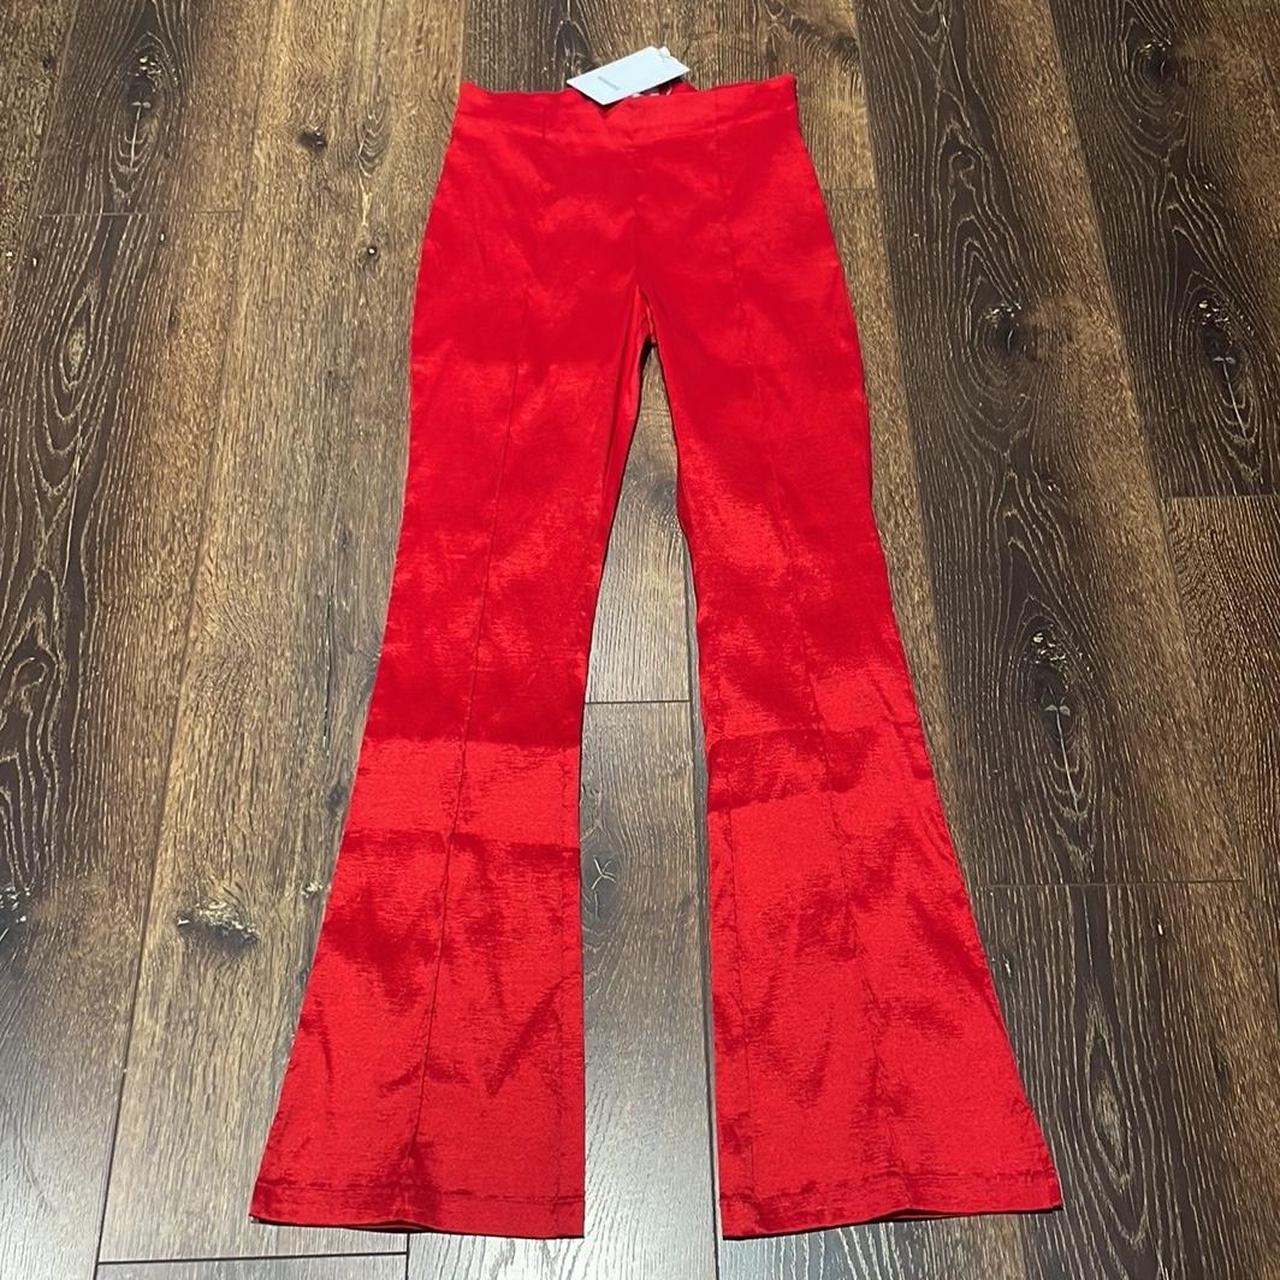 Hosbjerg Women's Red Trousers